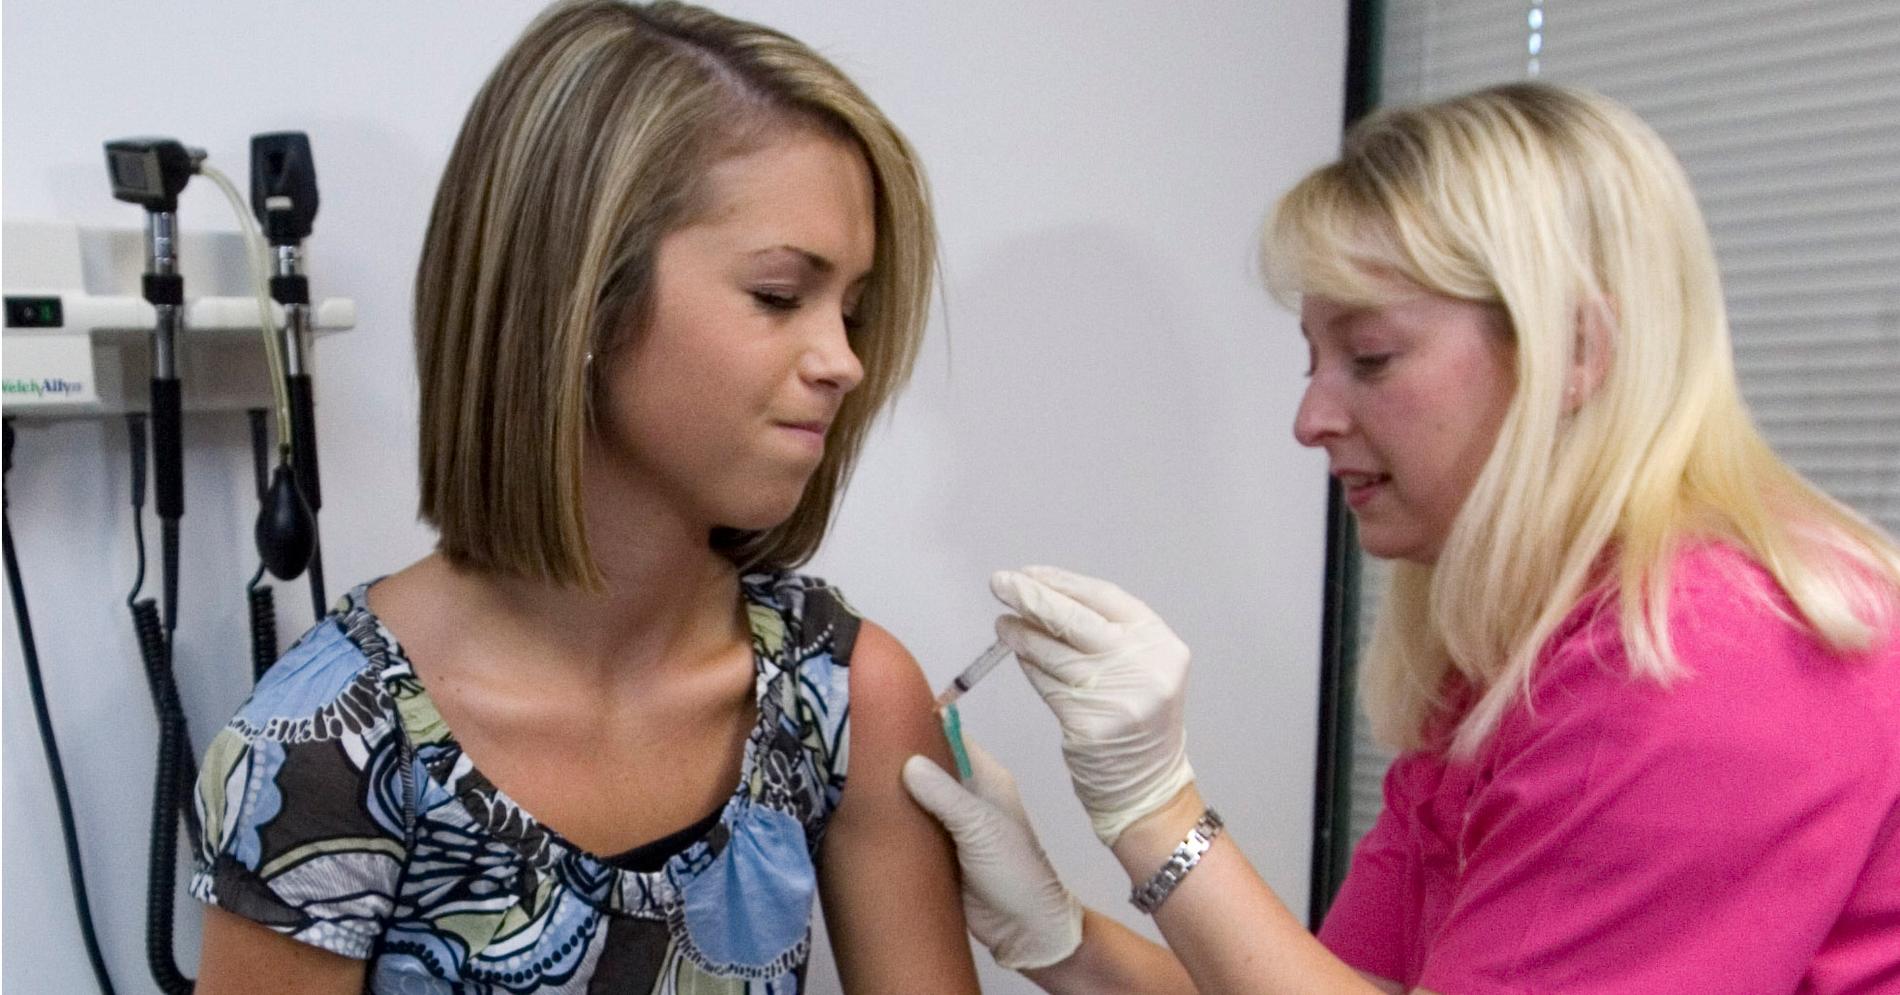 HPV-vaksinen er kun gratis for jenter. Foto: NTB Scanpix.